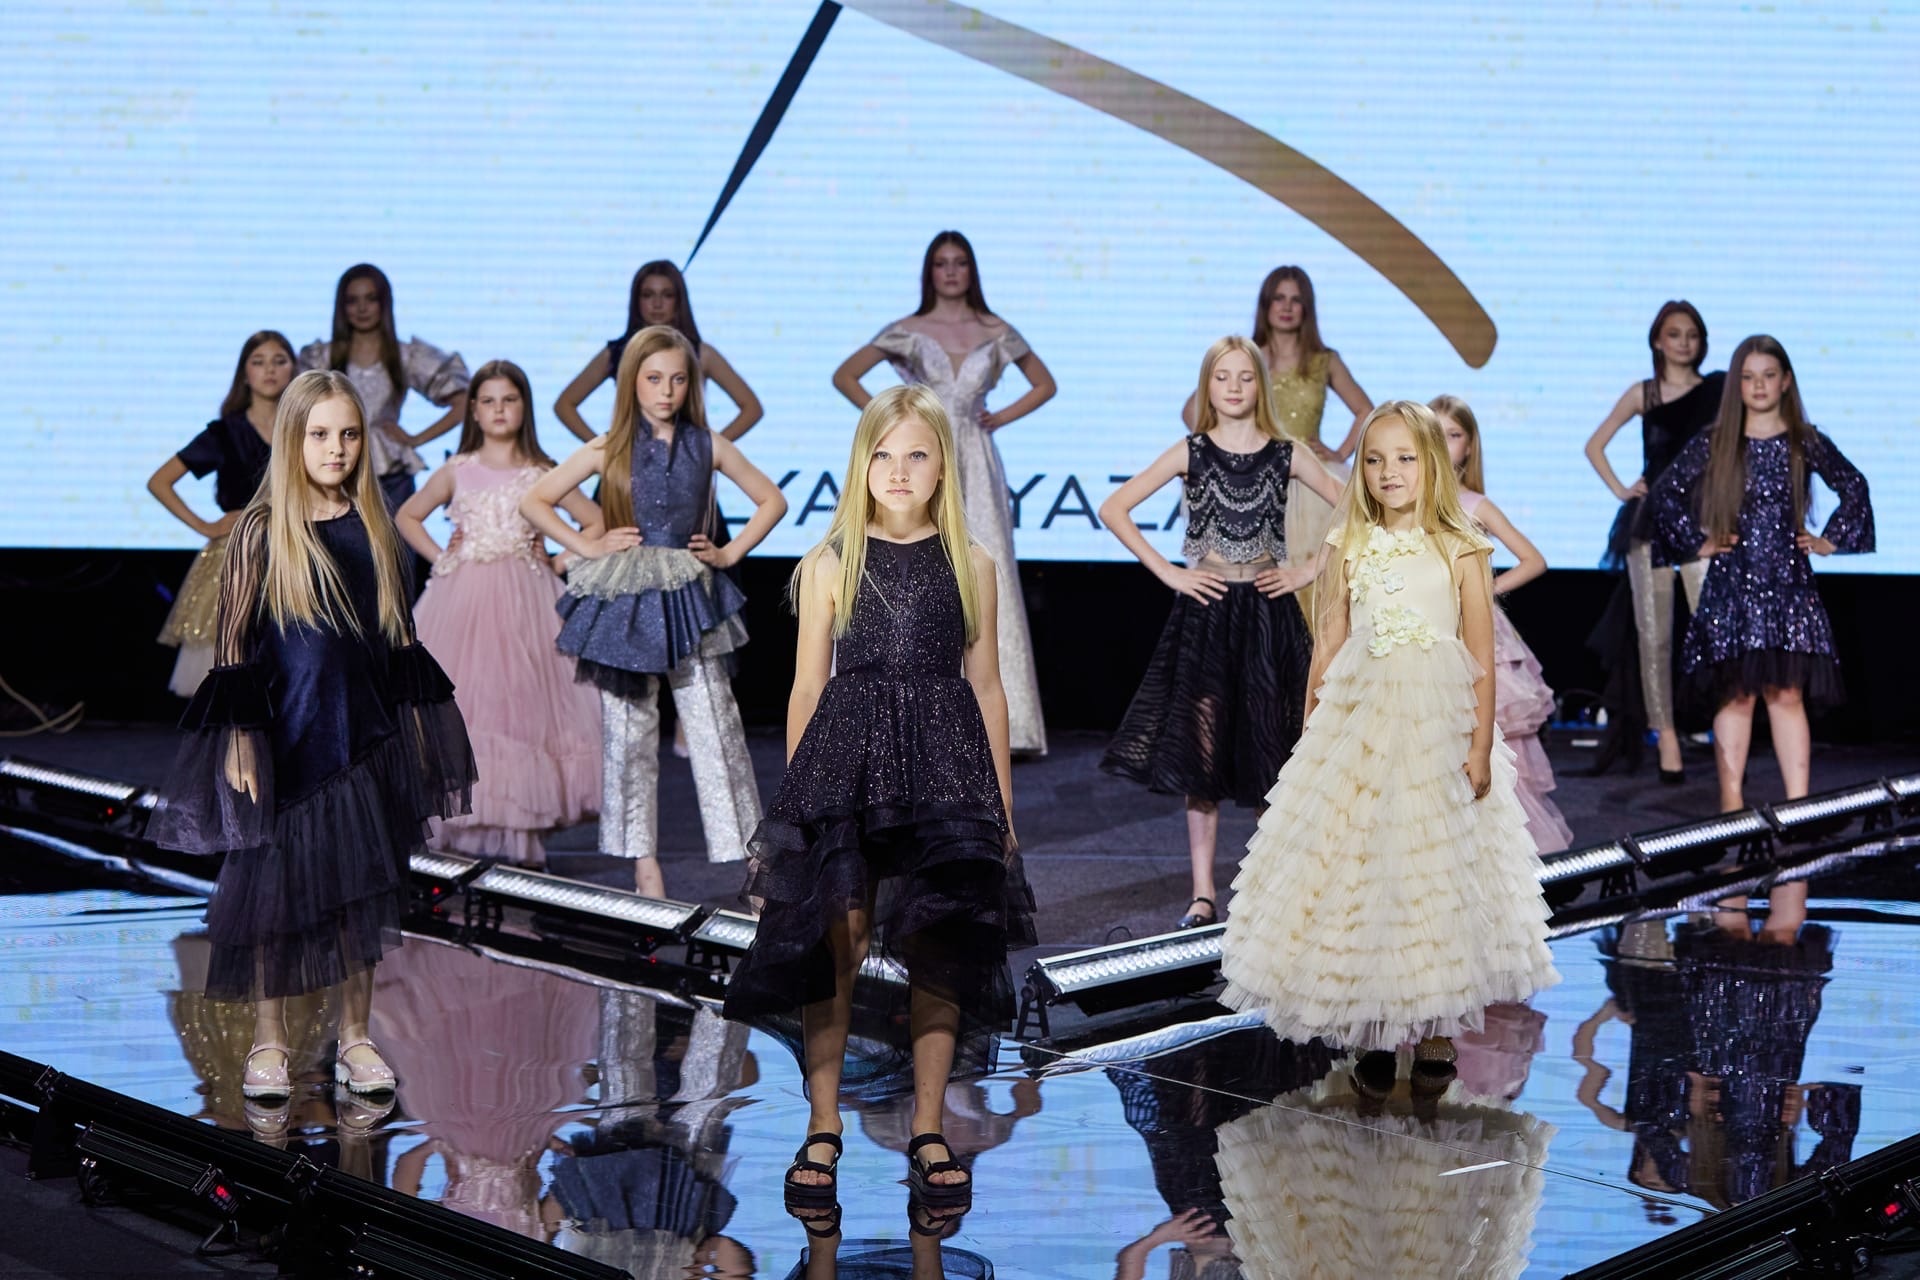 В начале июня в Москве прошло грандиозное фэшн-мероприятие — открытие летнего модного сезона Moscow Fashion Fair, которое завершилось музыкальным party «Muz-News». Владимирские модели из школы дизайнера Натальи Рязановой были в эпицентре событий.